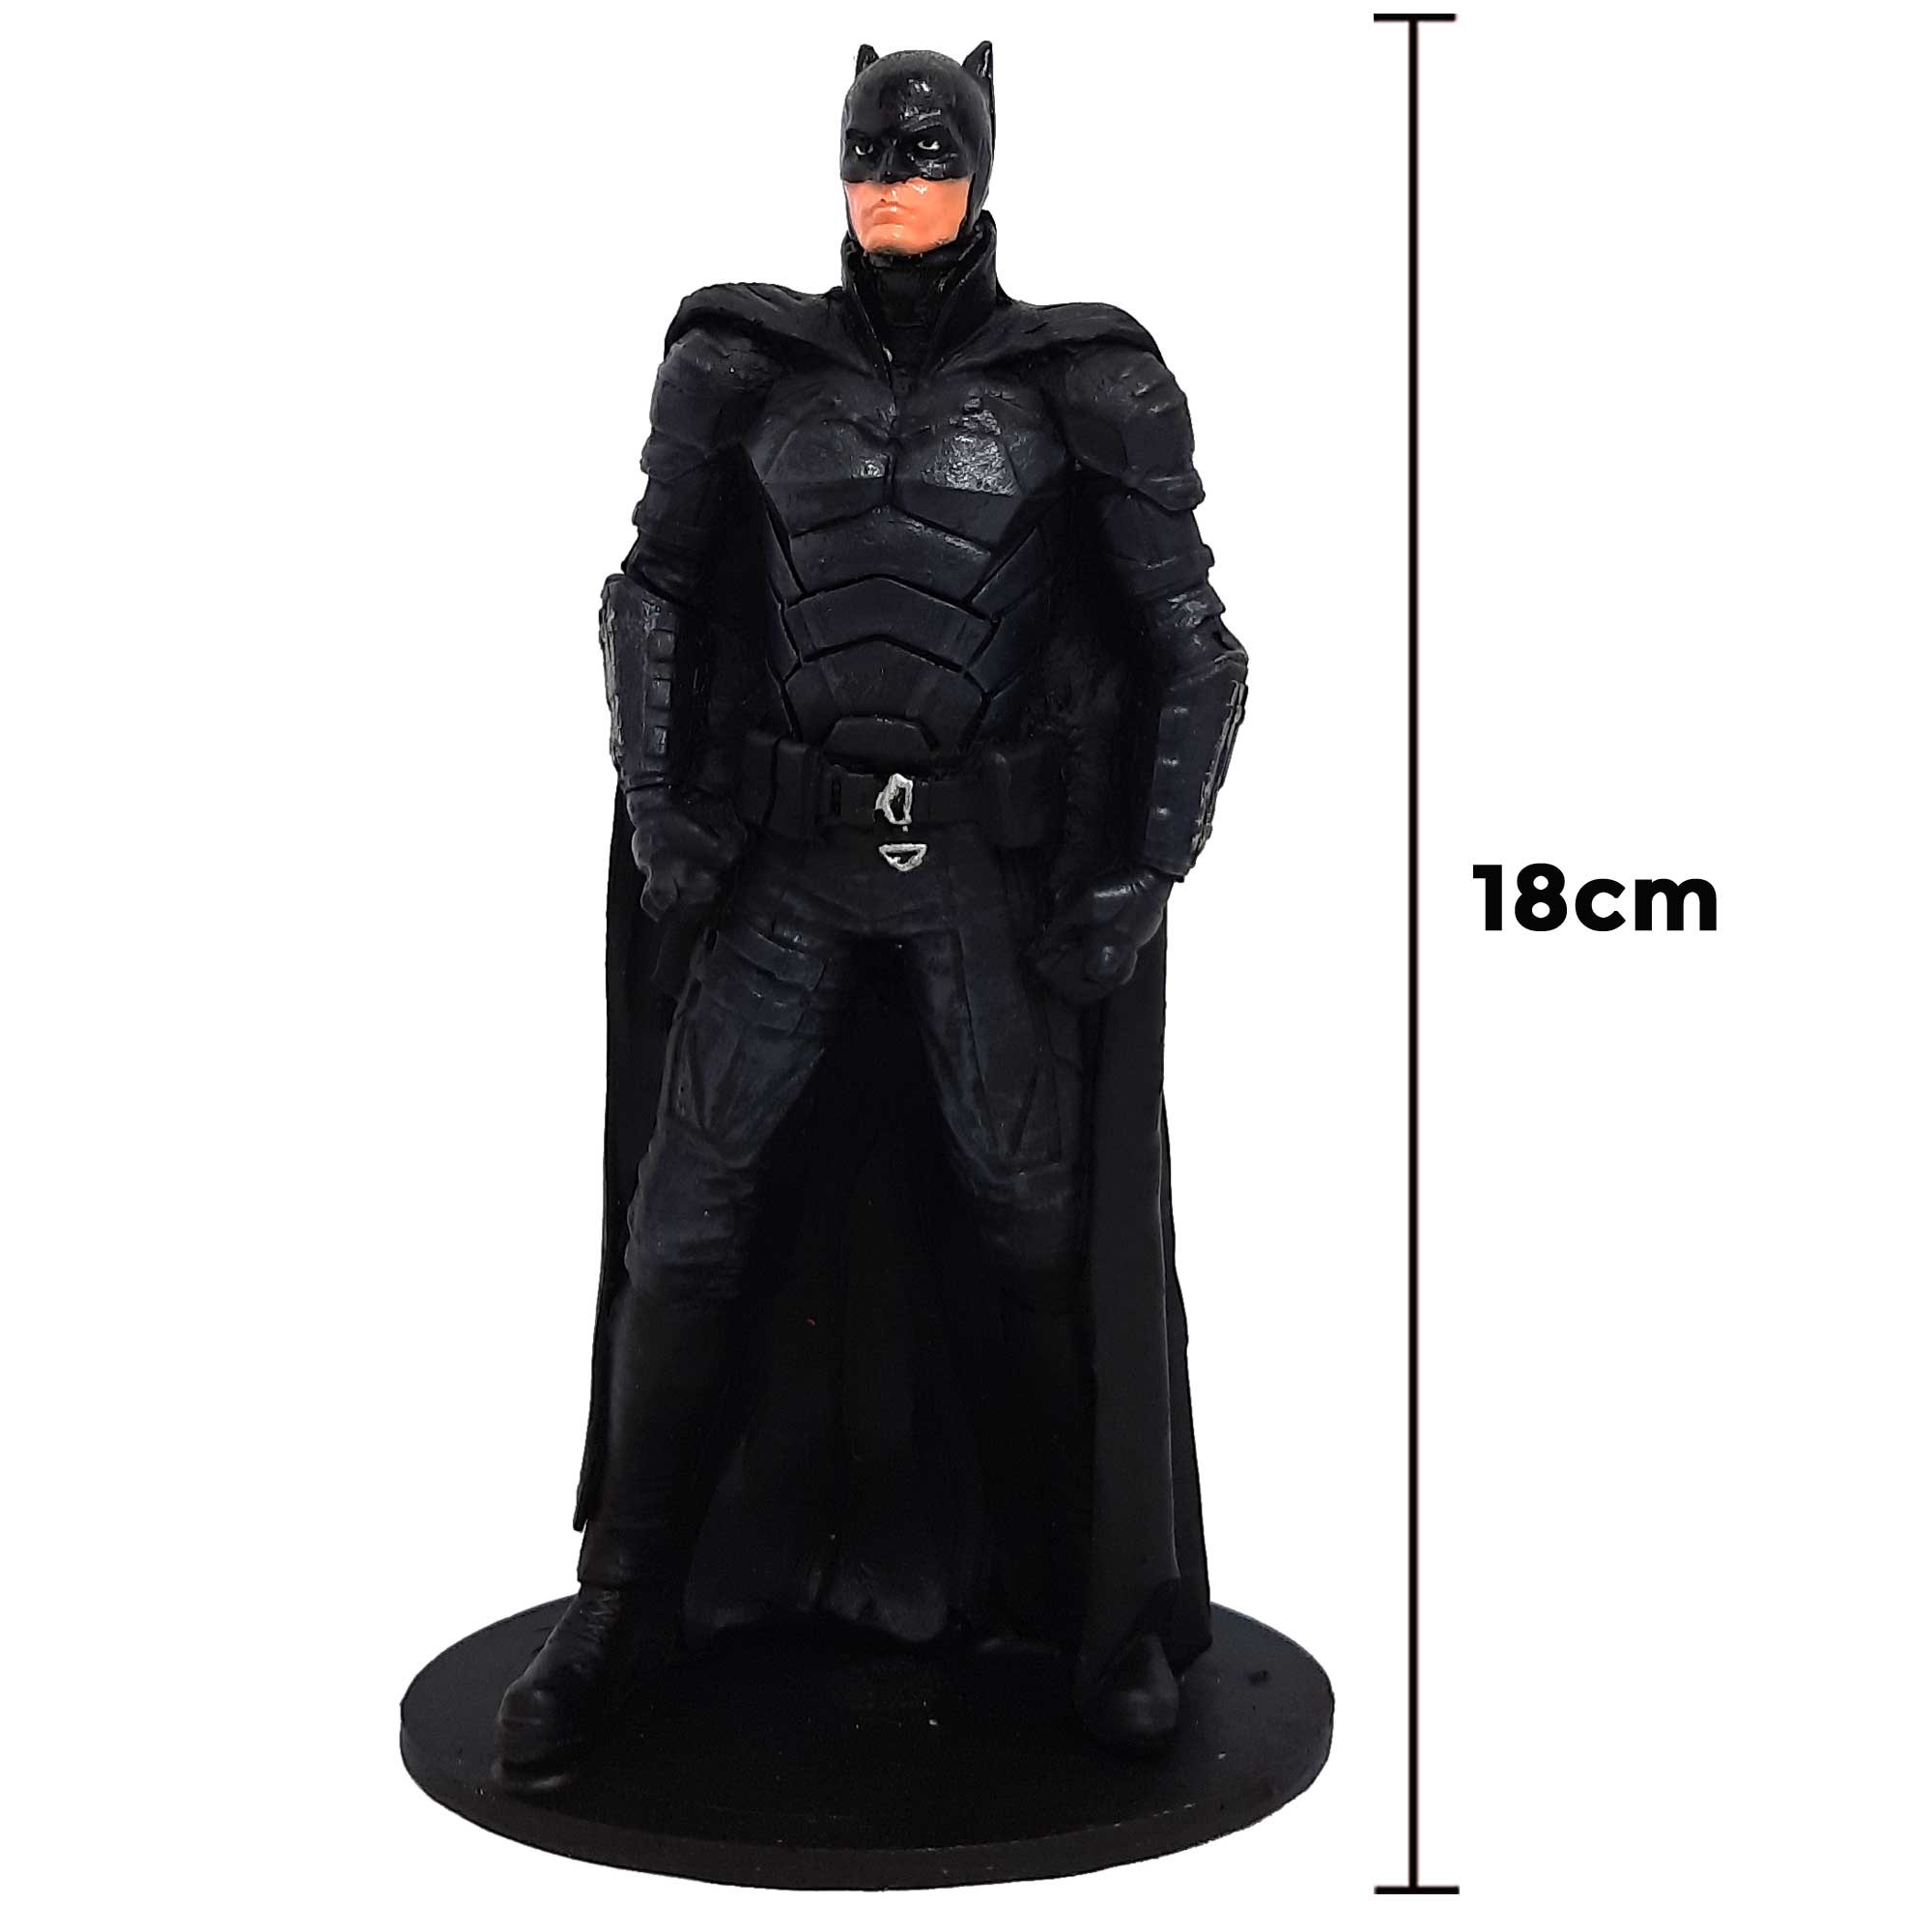 Boneco Action Figure The Batman Robert Pattinson 18cm